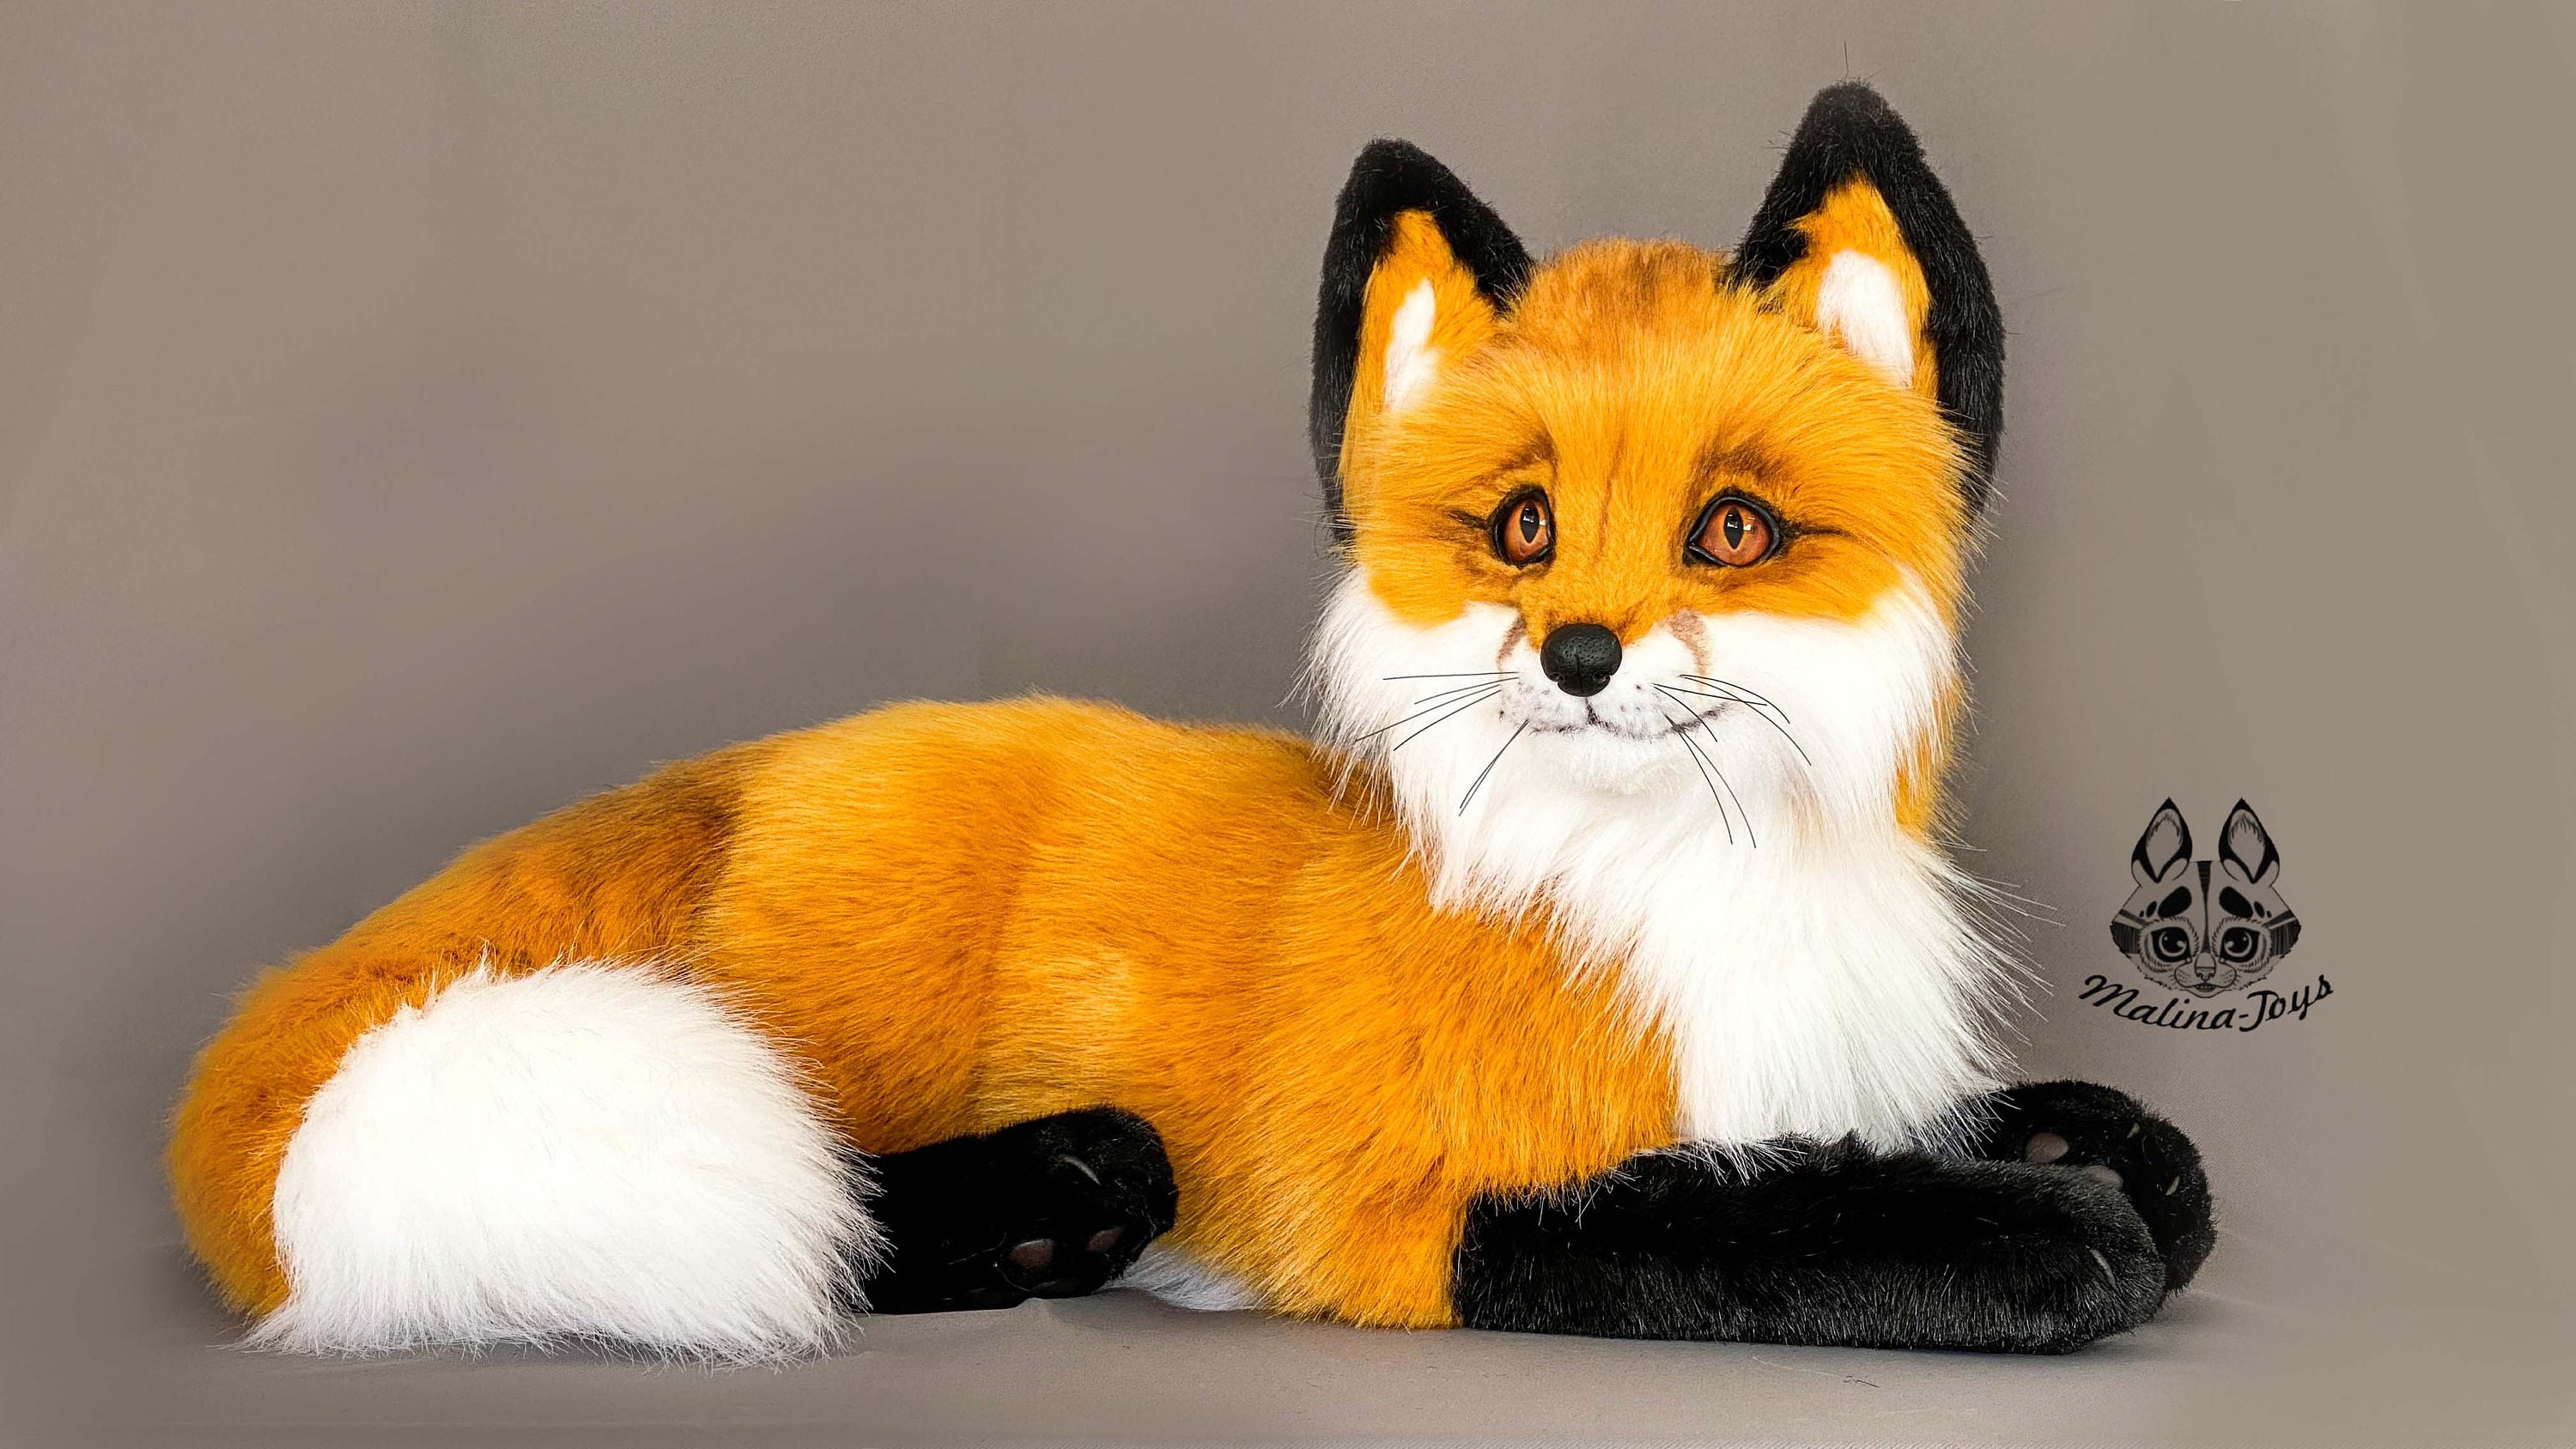 Malina-Toys - Say hello to a small Arctic fox Angel ♥